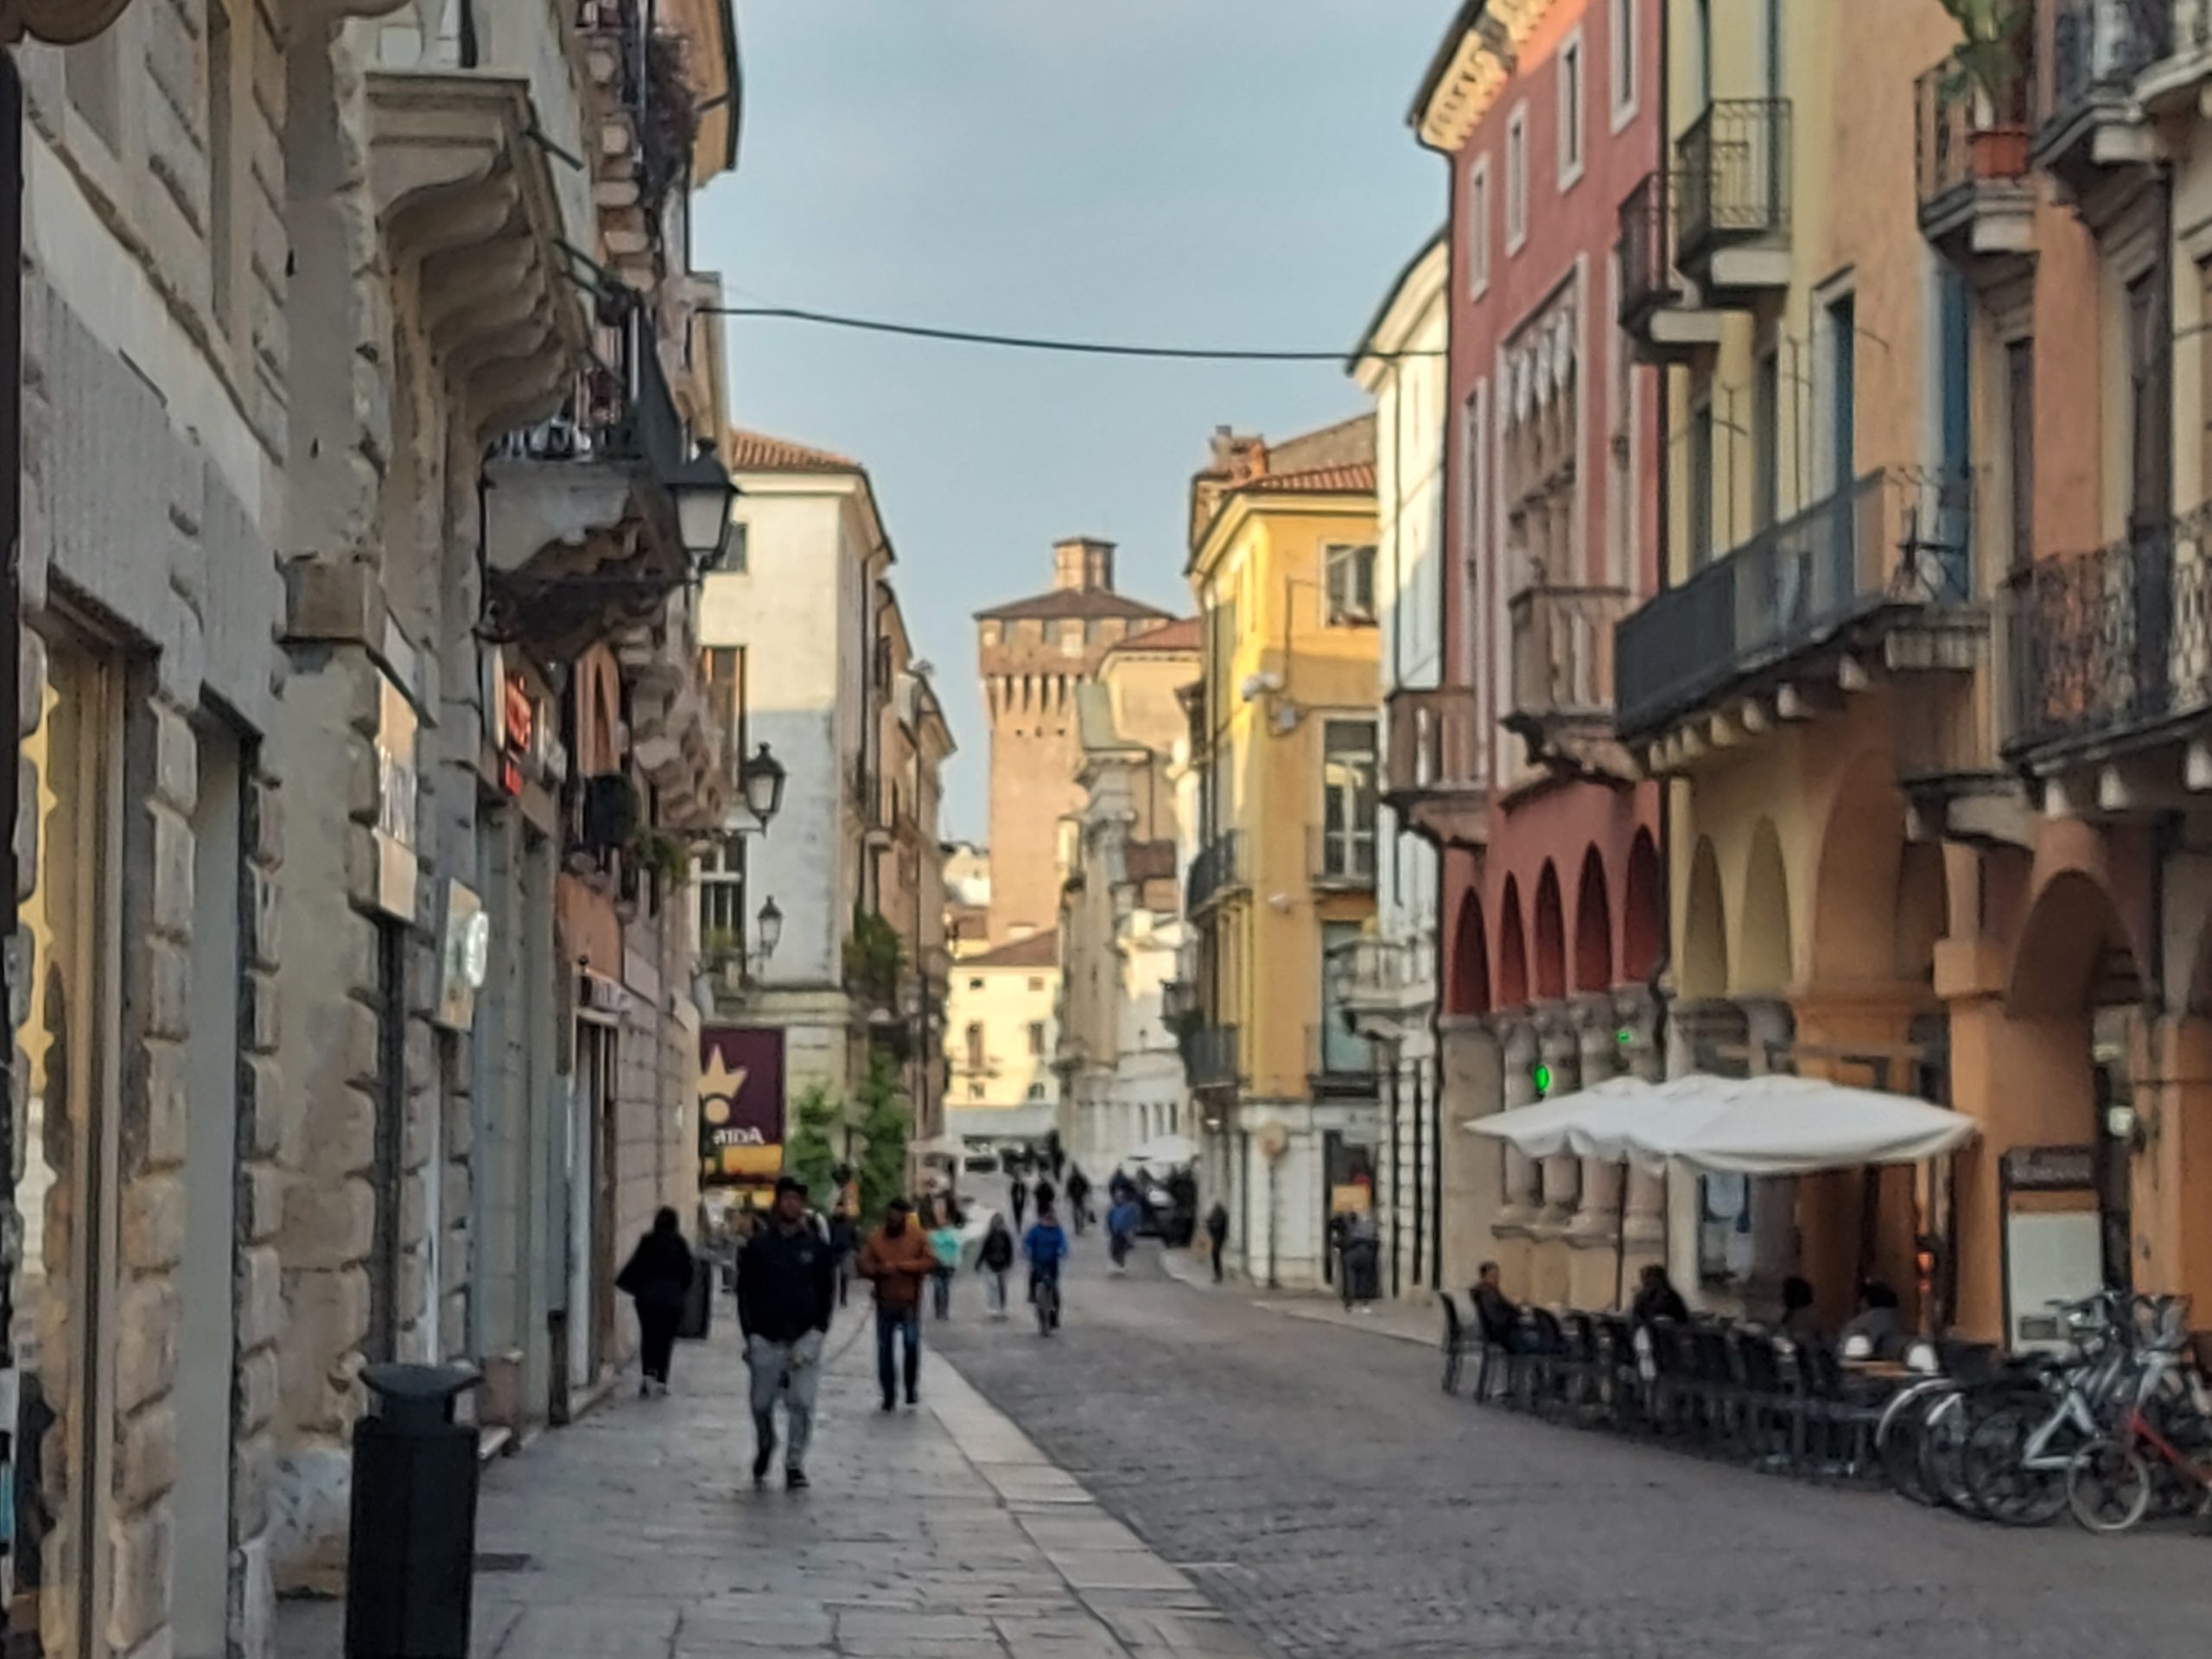 Vicenza, Italy / Kimberly Sullivan